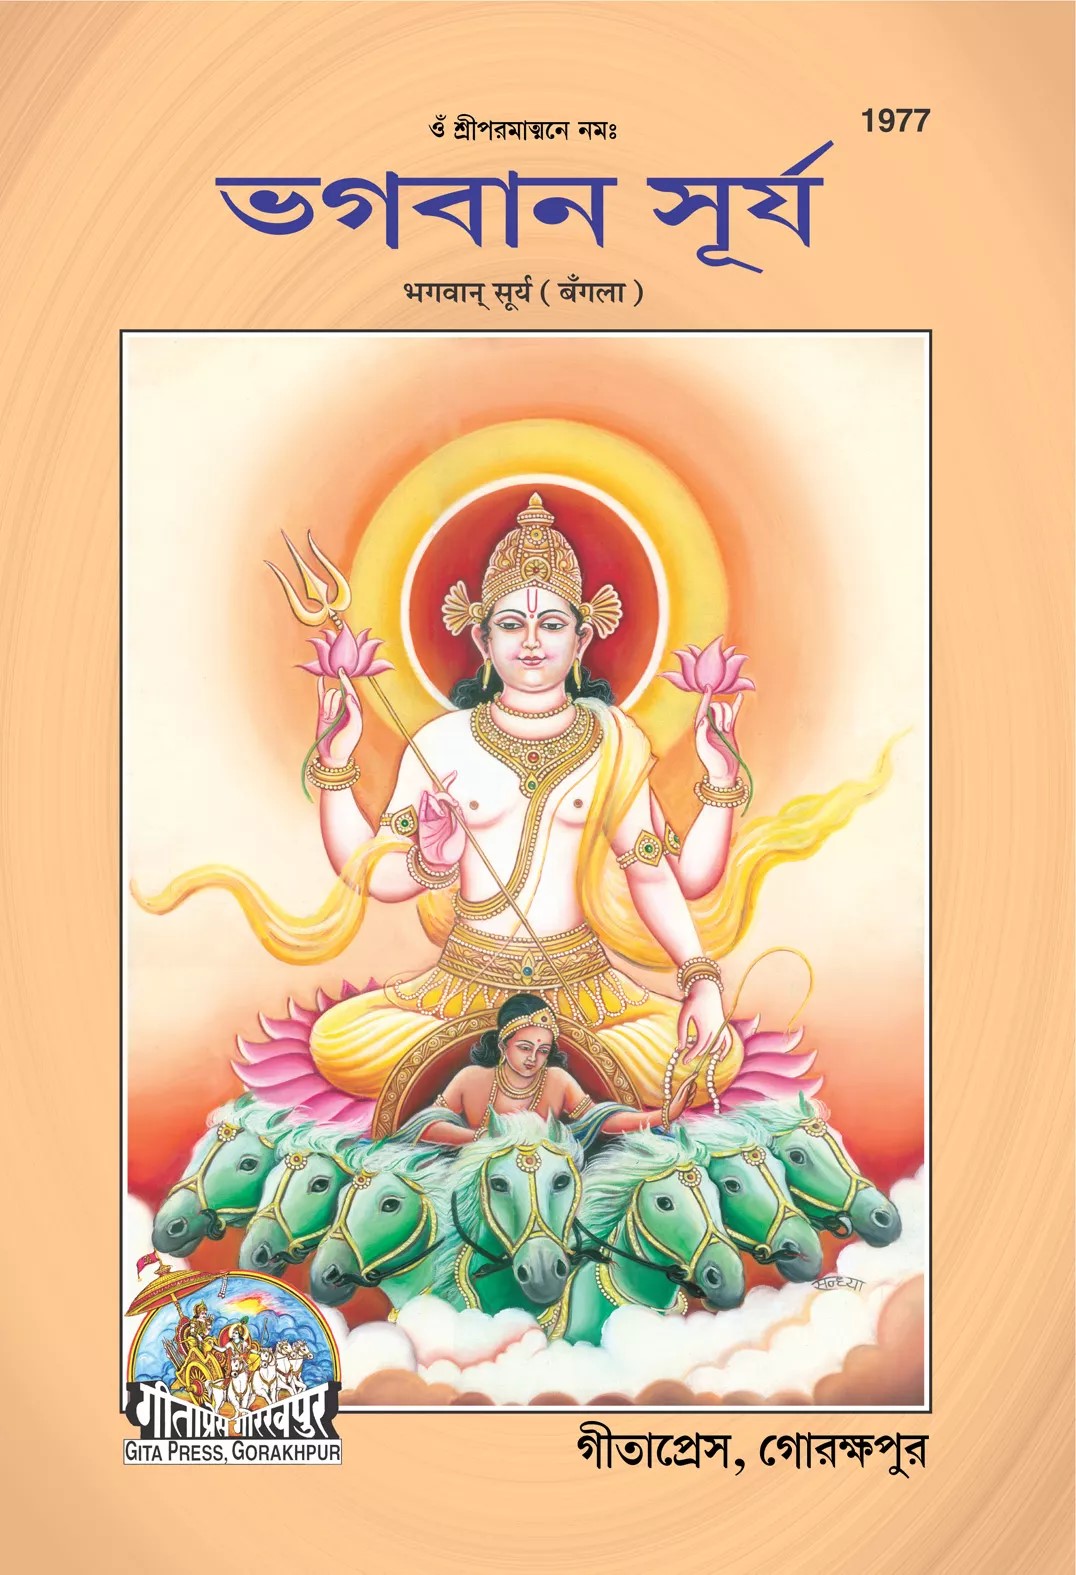 Bhagwan Surya (ভগবান সূর্য)